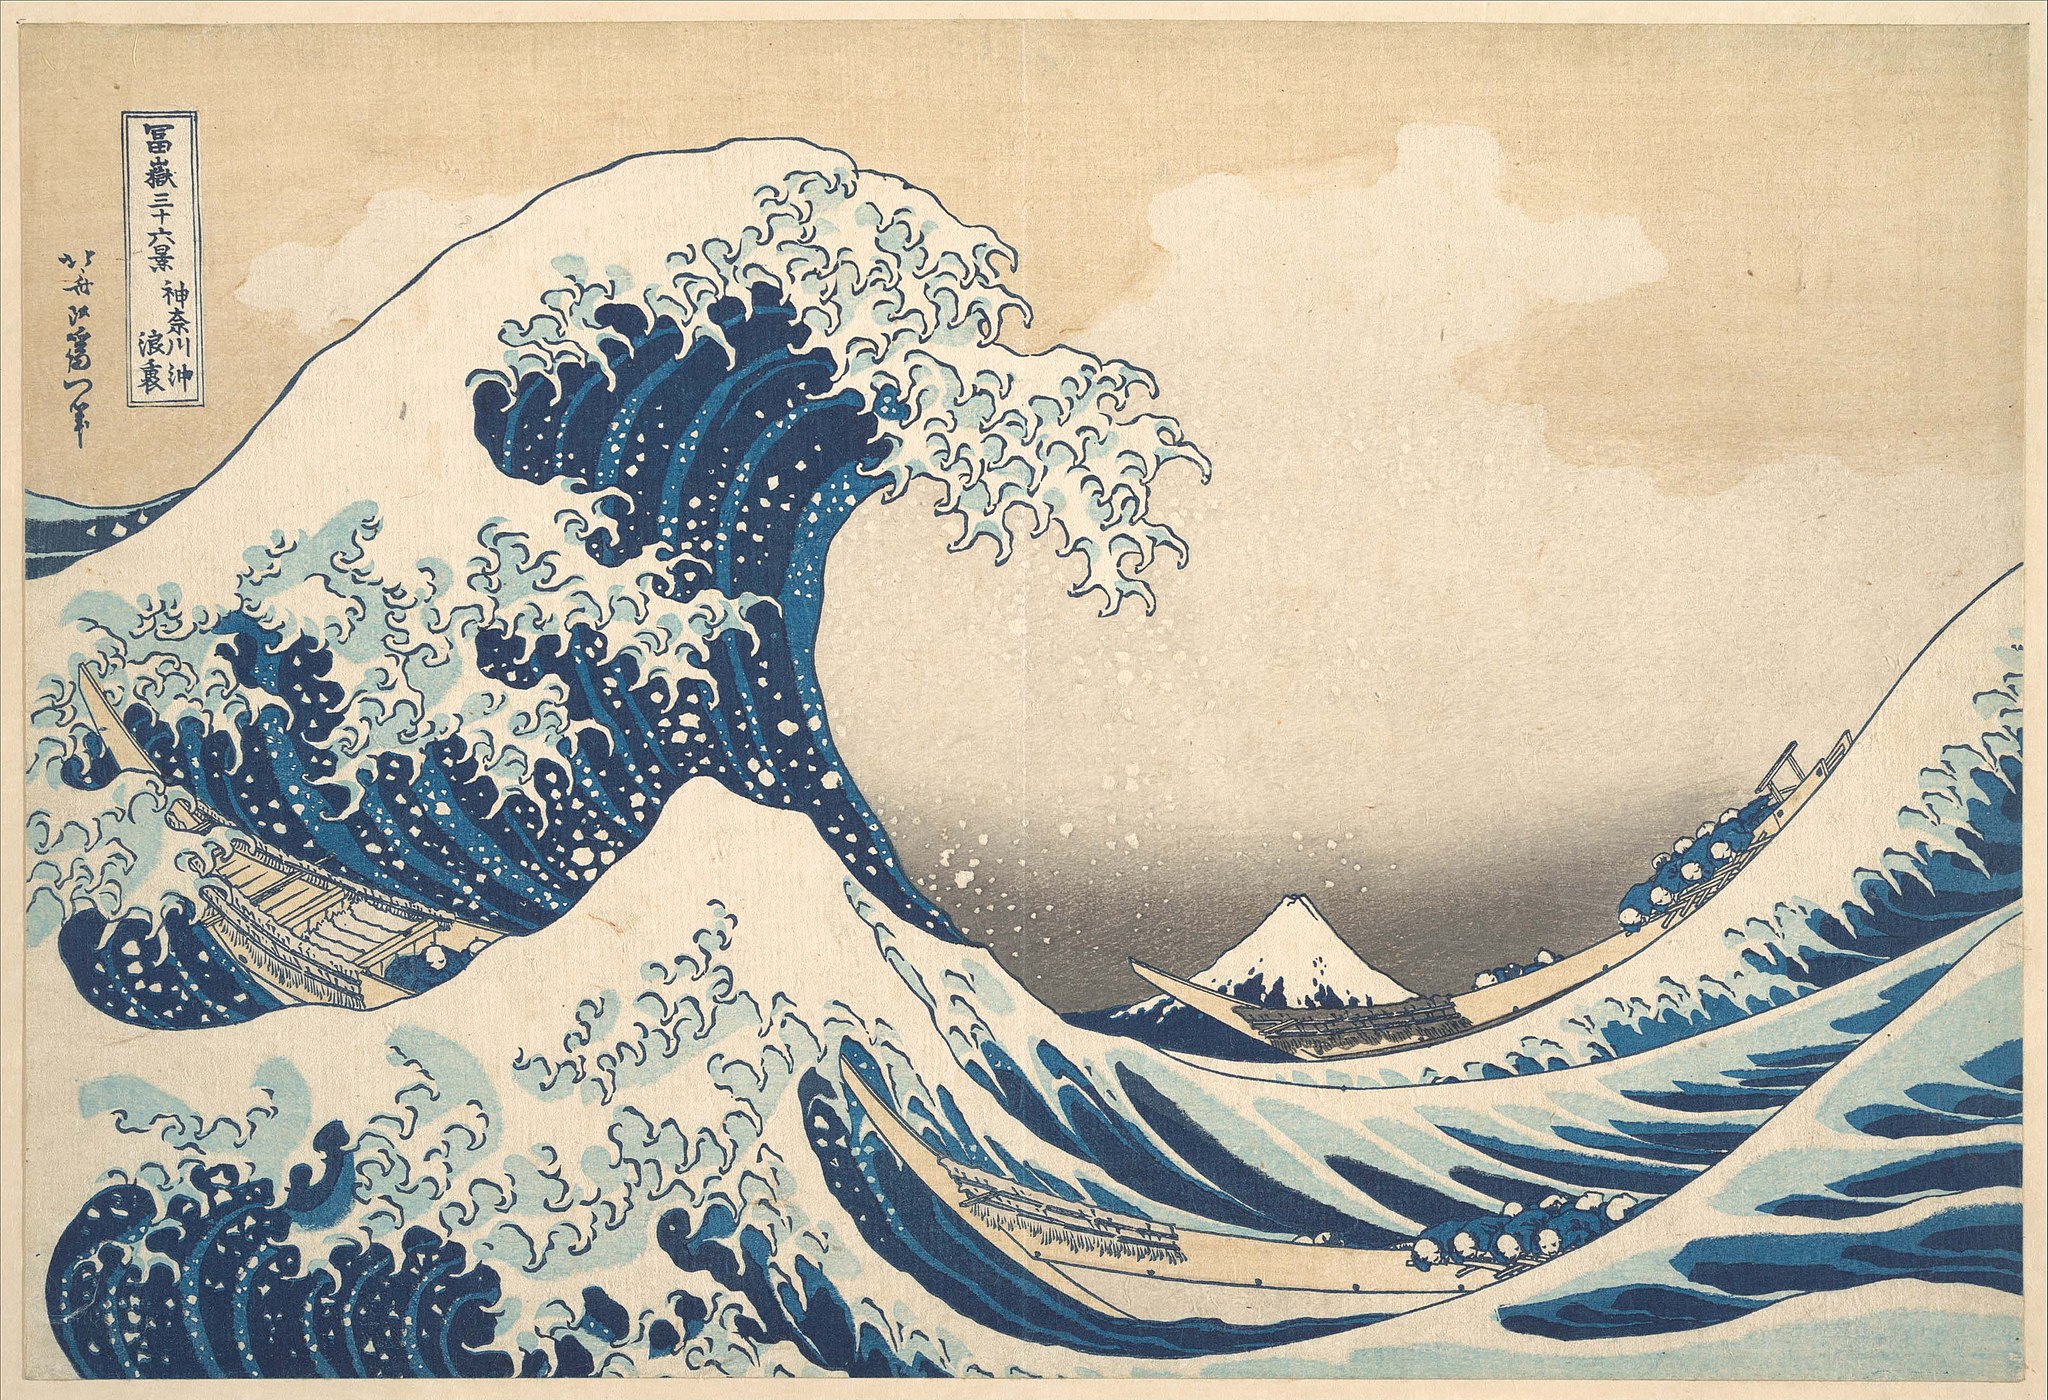 The Great Wave, woodblock print by Katsushika Hokusai